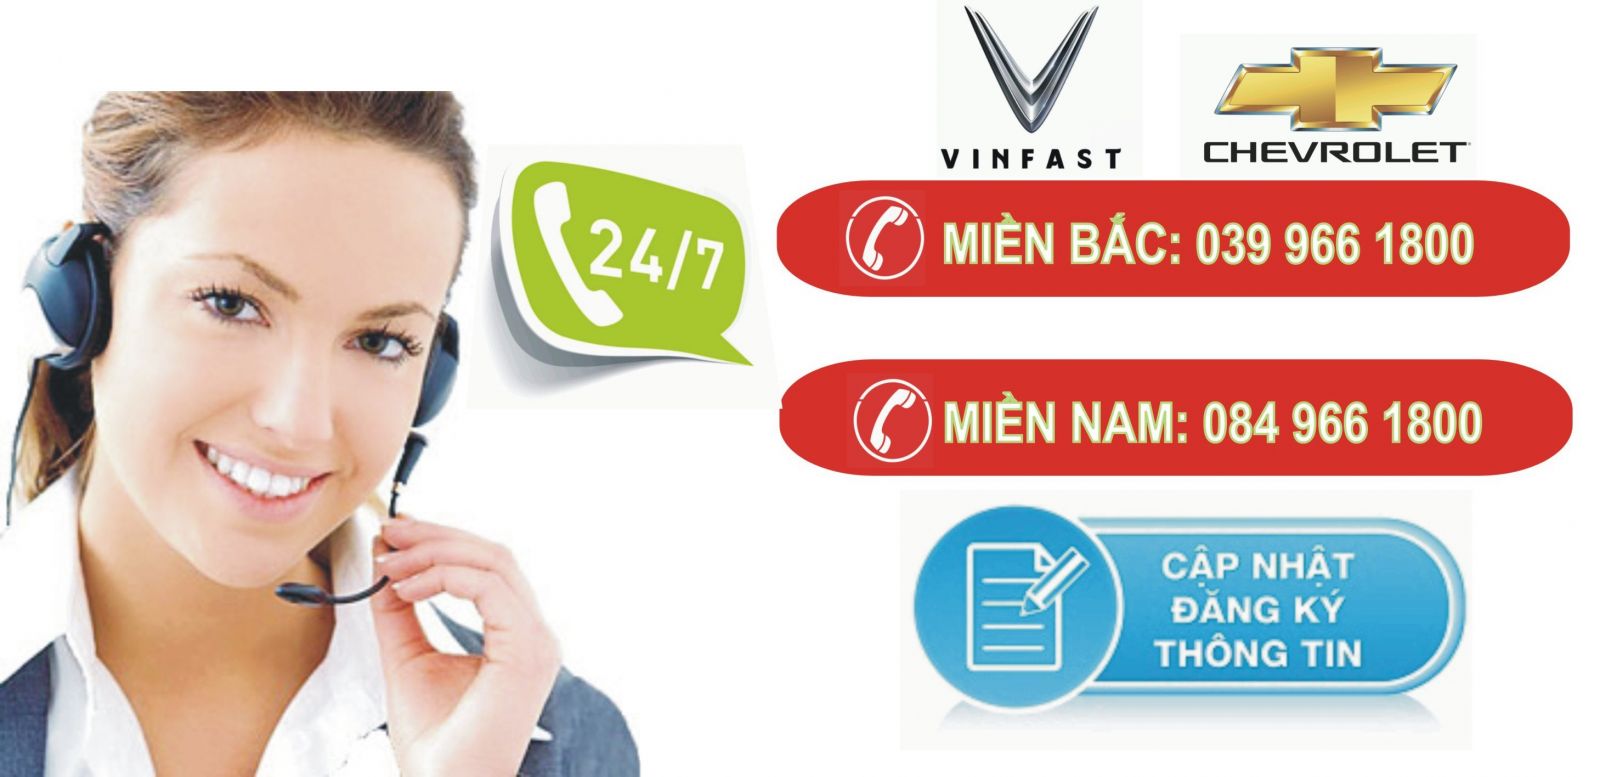 Hotline VinFast